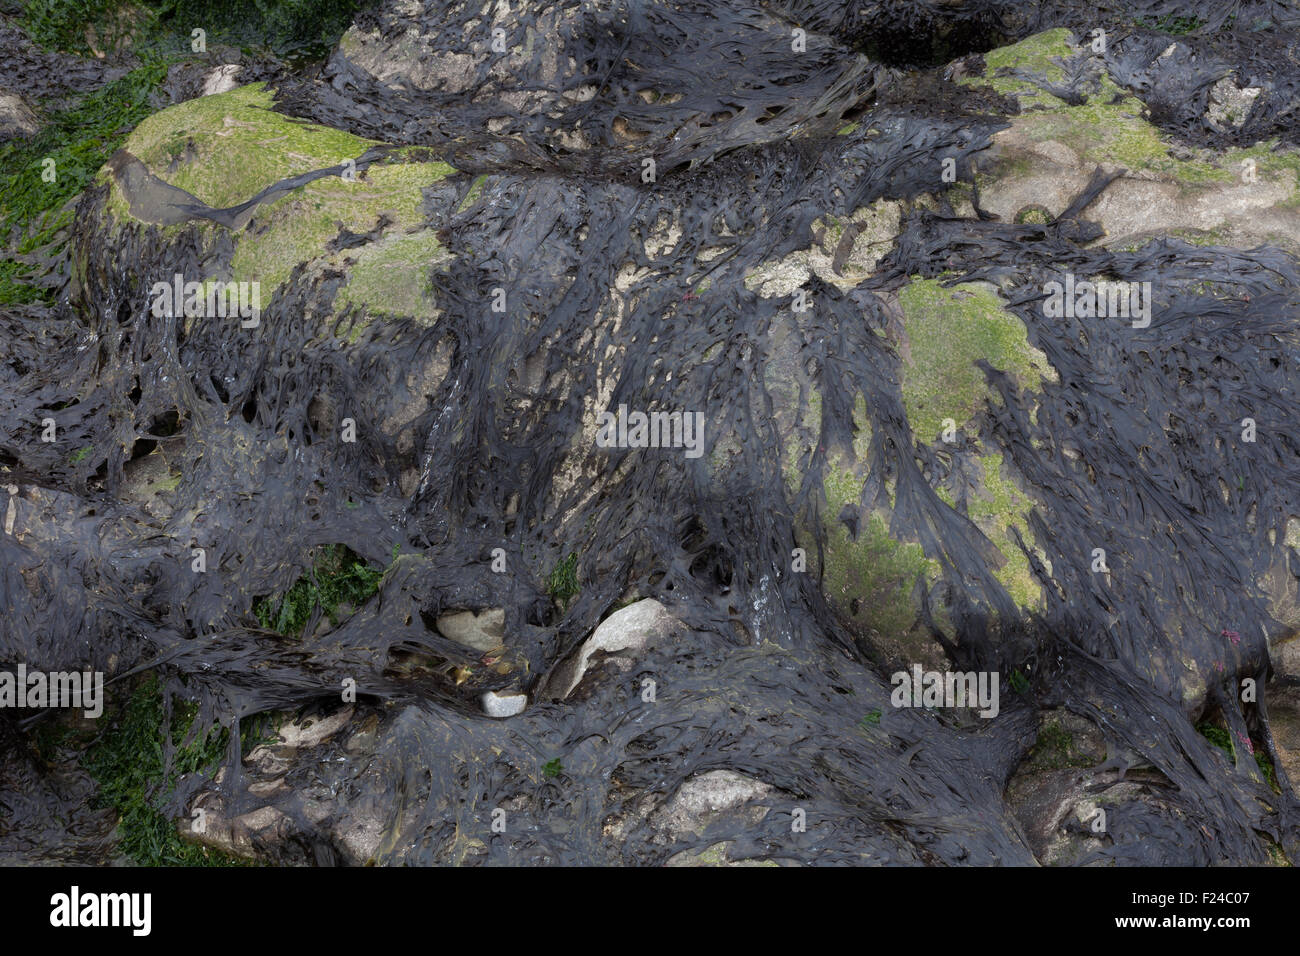 Les algues sur les roches sur la péninsule de Gower, Swansea, le type qui est utilisé pour faire de la délicatesse gallois appelé Laverbread. Banque D'Images